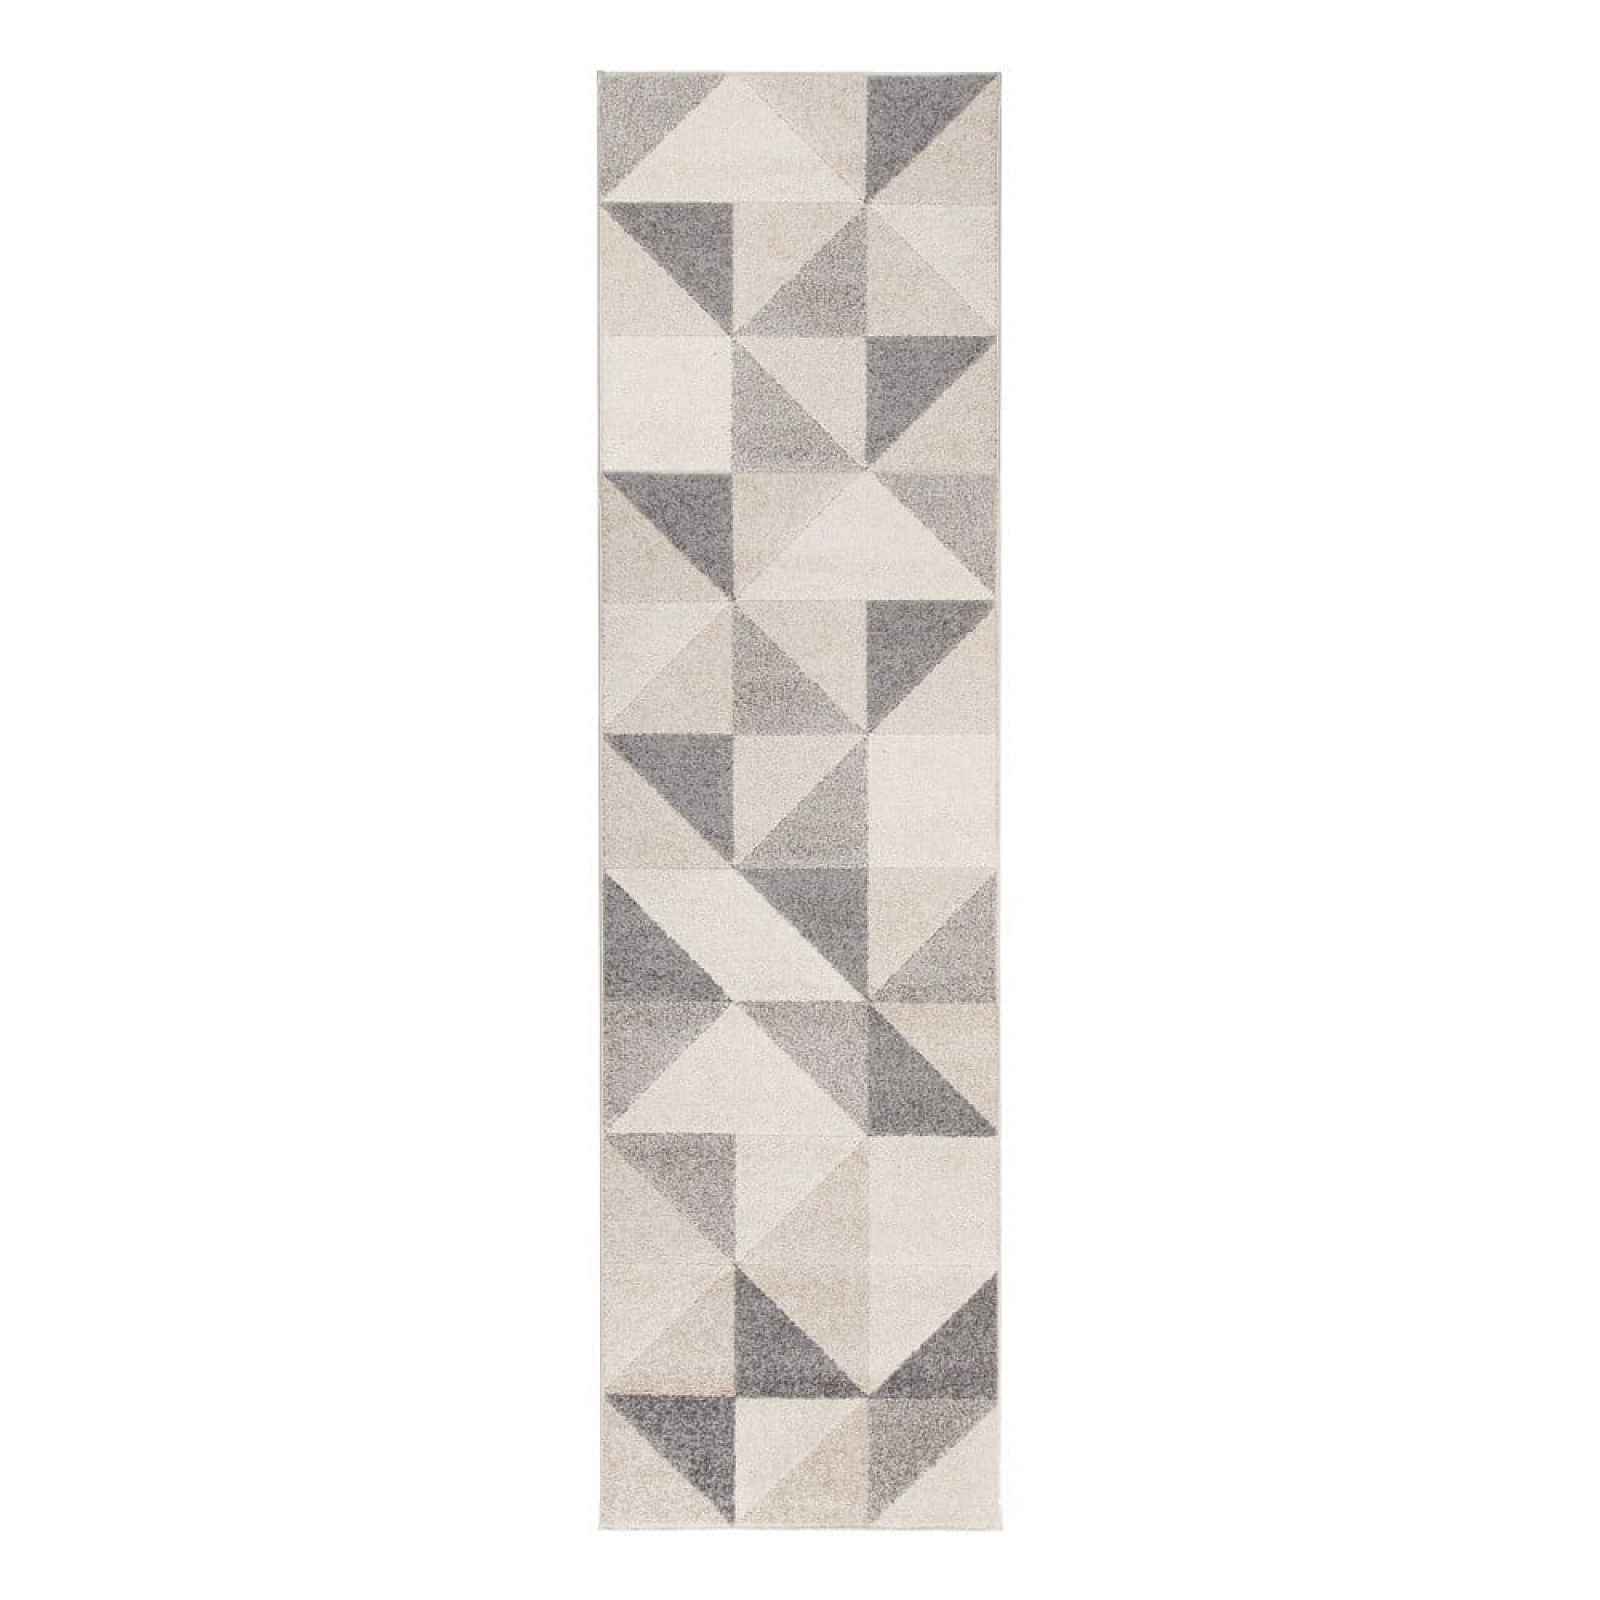 Šedo-růžový koberec Flair Rugs Urban Triangle, 60 x 220 cm